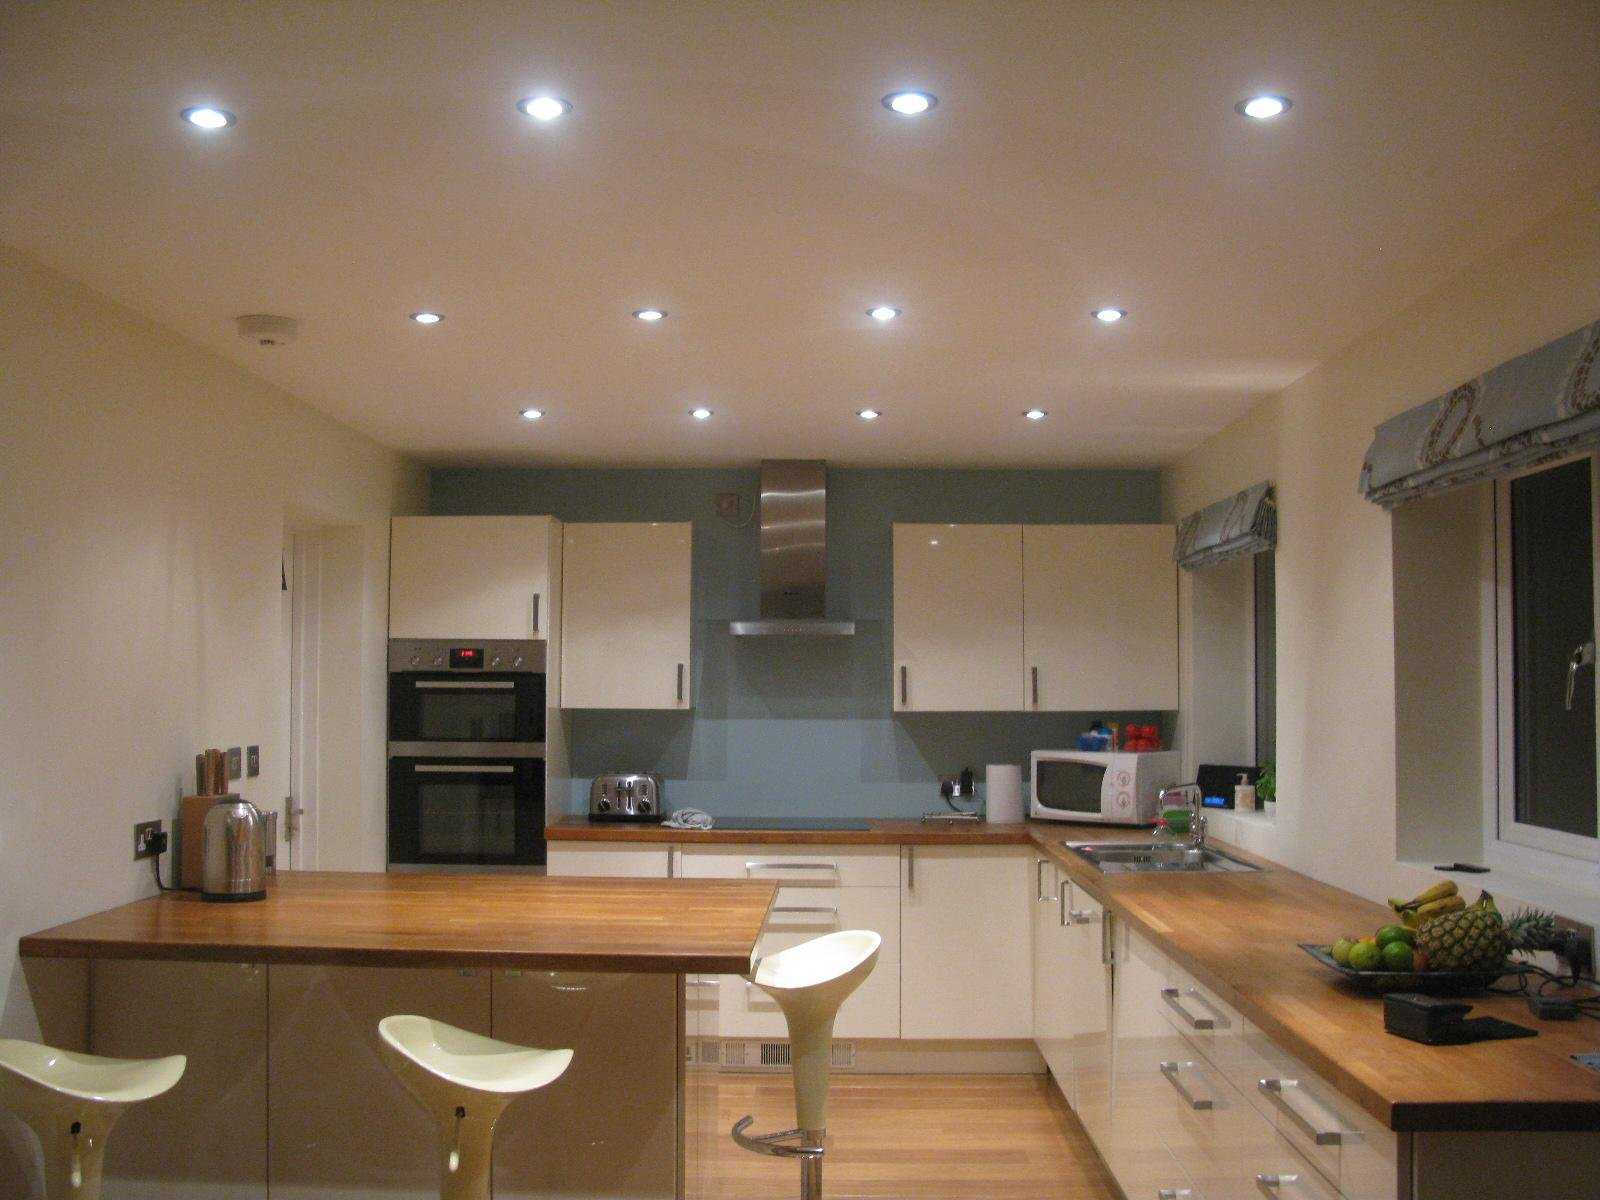 Светильники для натяжных потолков (113 фото): какие потолочные светильники лучше, расположение в интерьере